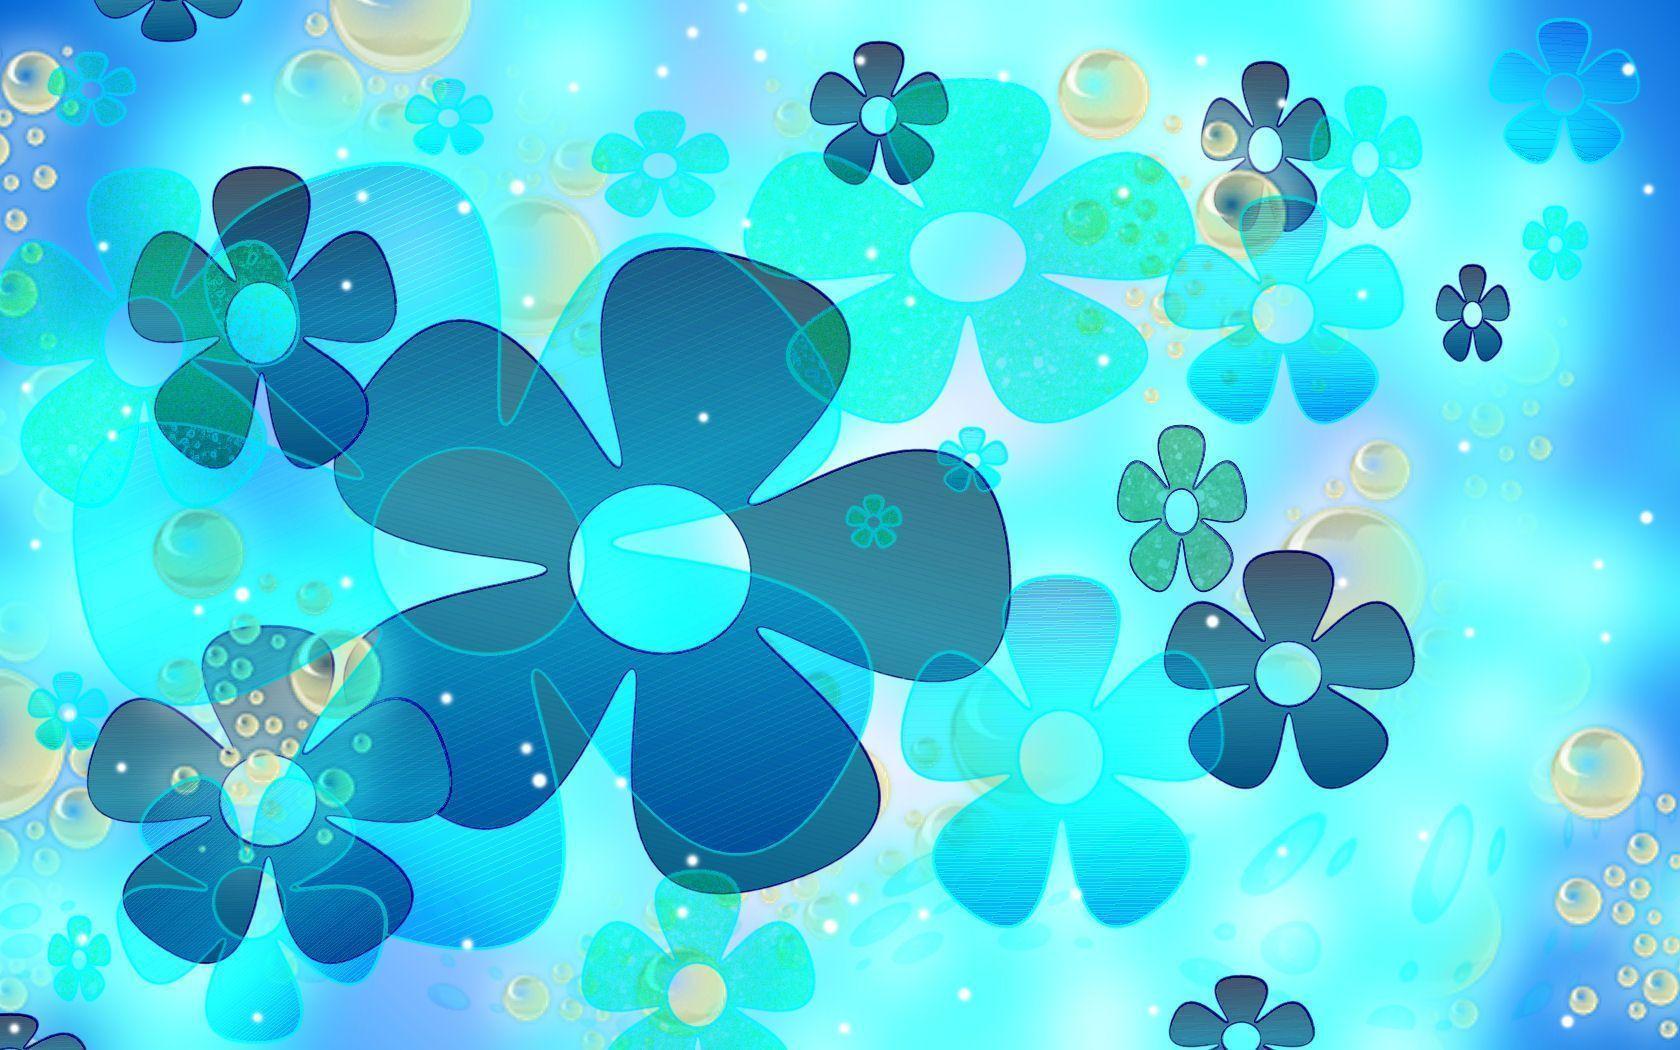 Wallpaper For > Blue Flower Desktop Wallpaper